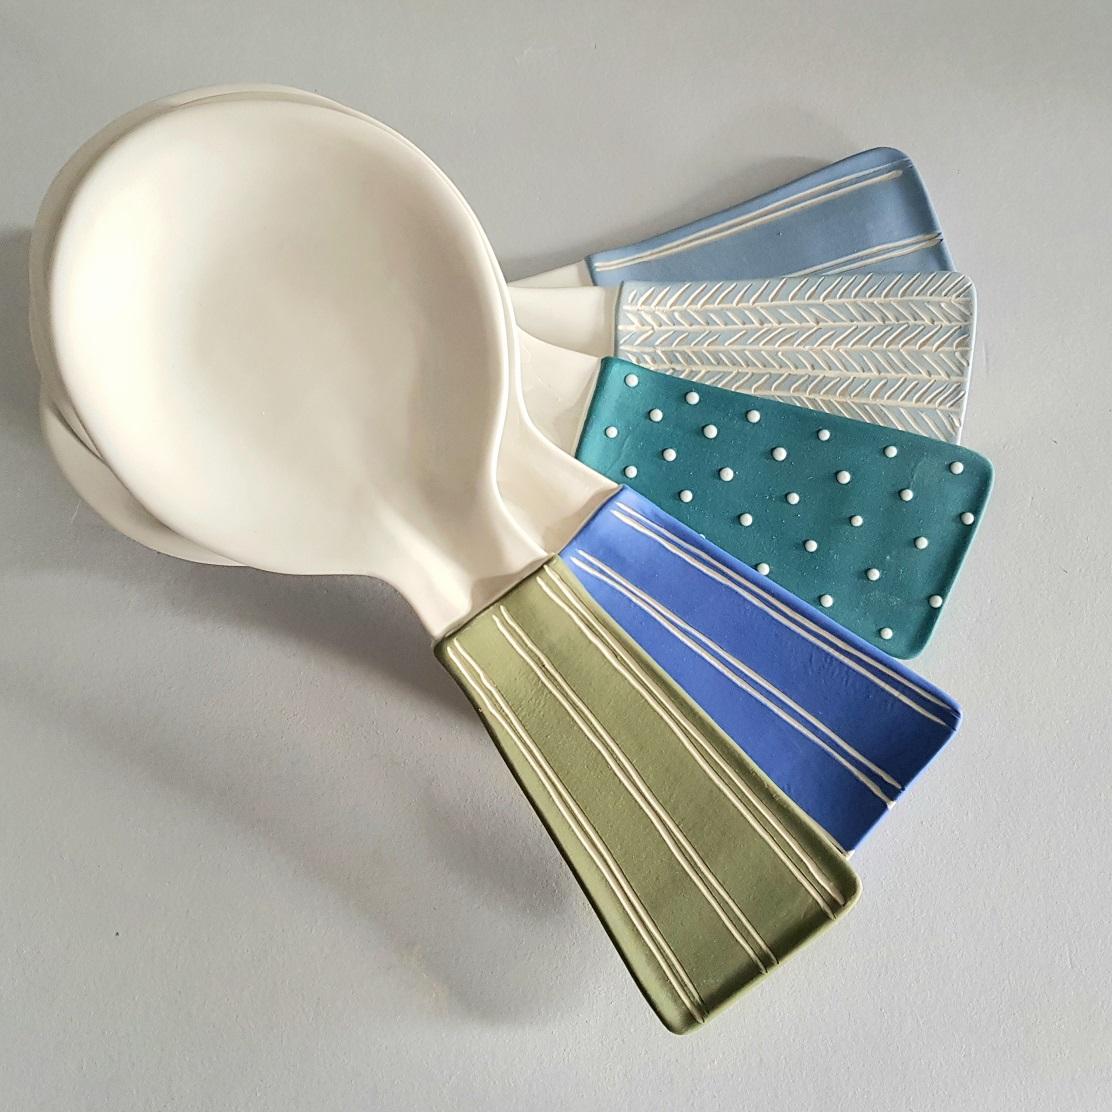 ceramic spoon rest ideas